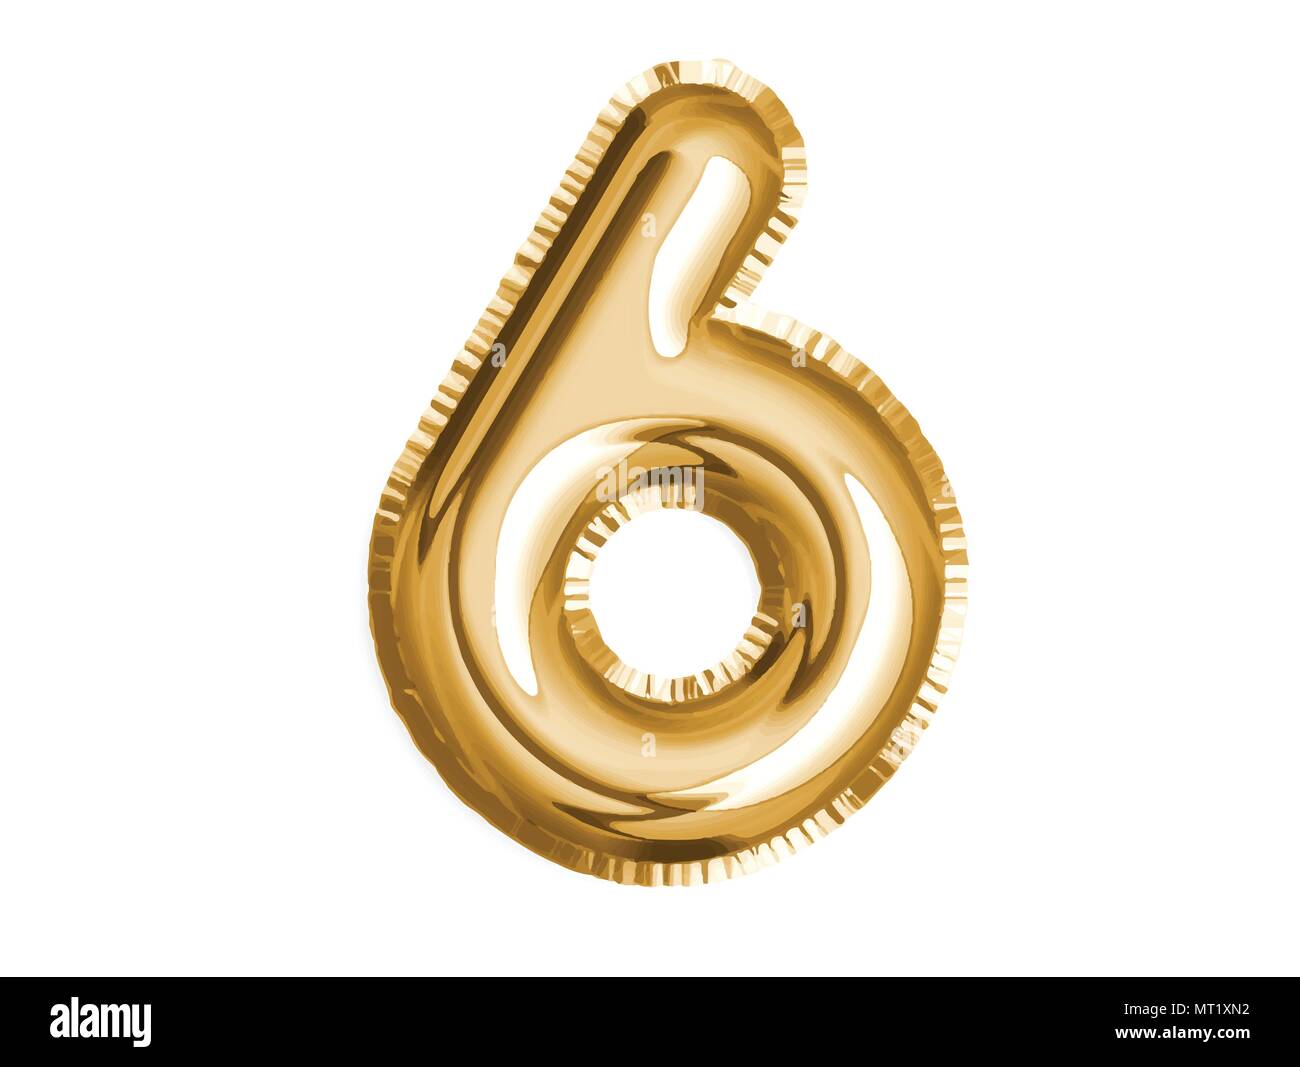 Le nombre d'or air balloon six pour célébrer la fête de douche de bébé décoration Illustration de Vecteur